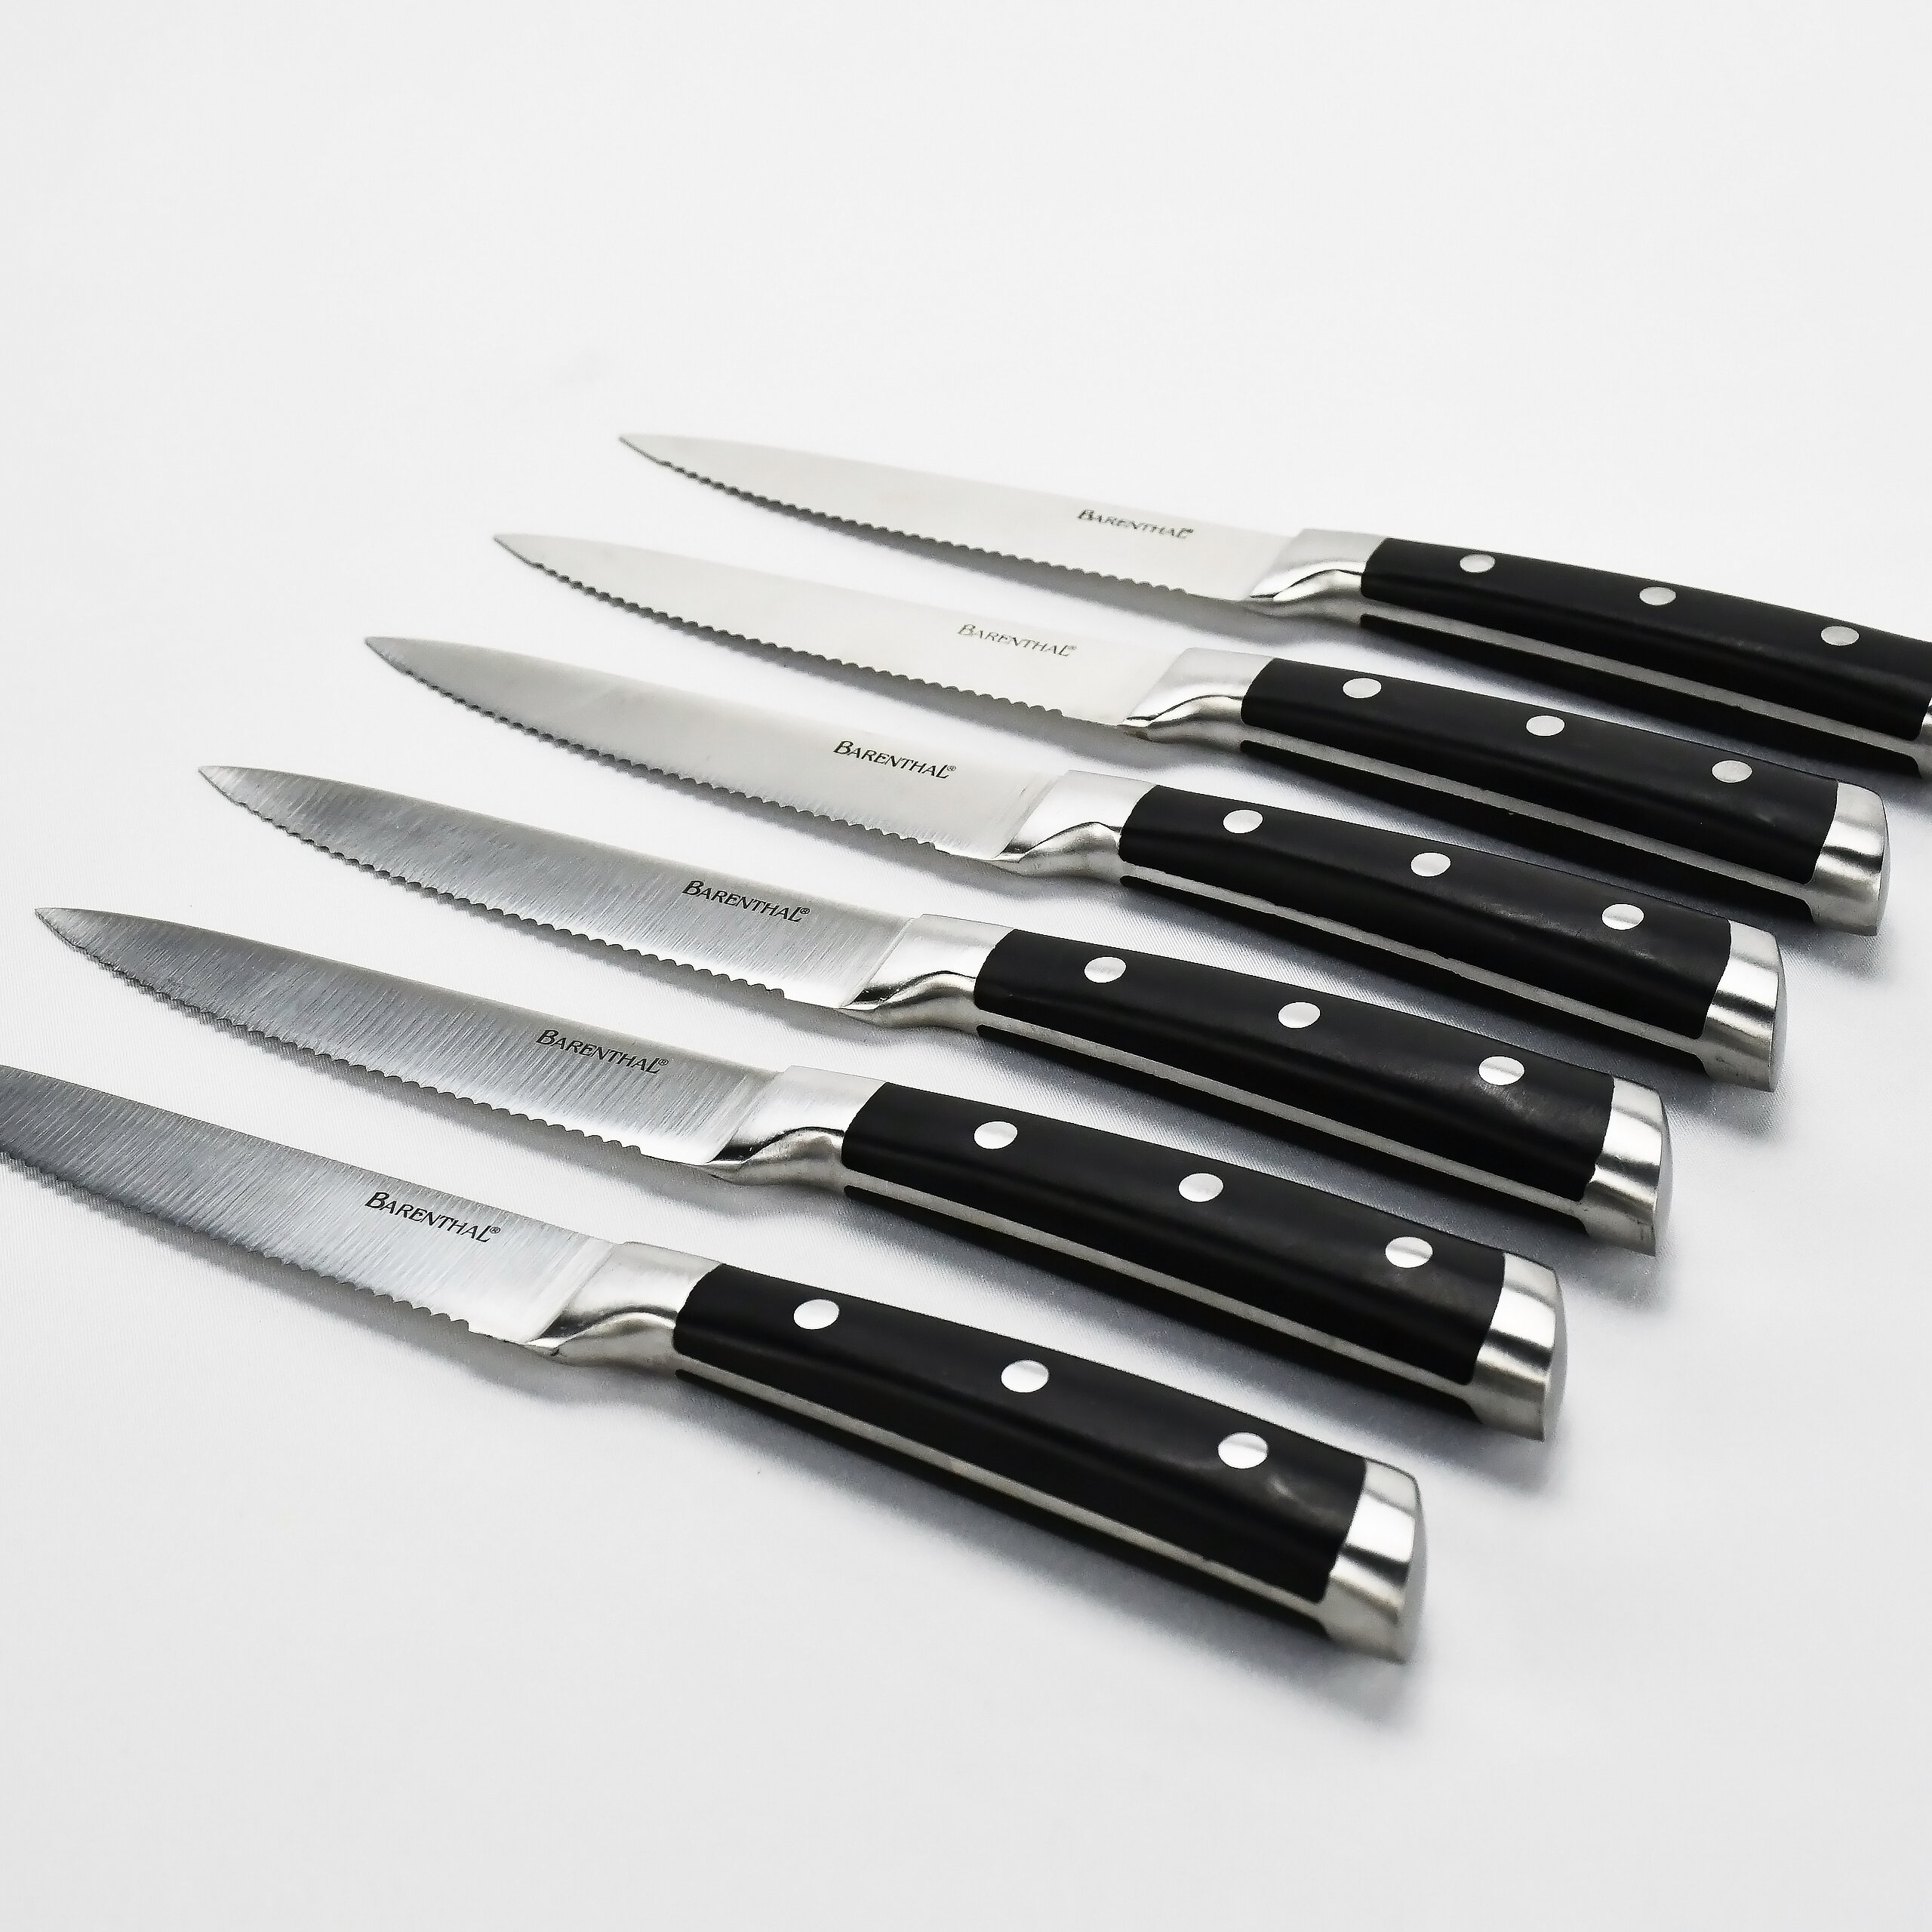 https://assets.wfcdn.com/im/65585479/compr-r85/1498/149868618/barenthal-6-piece-stainless-steel-steak-knife-set.jpg